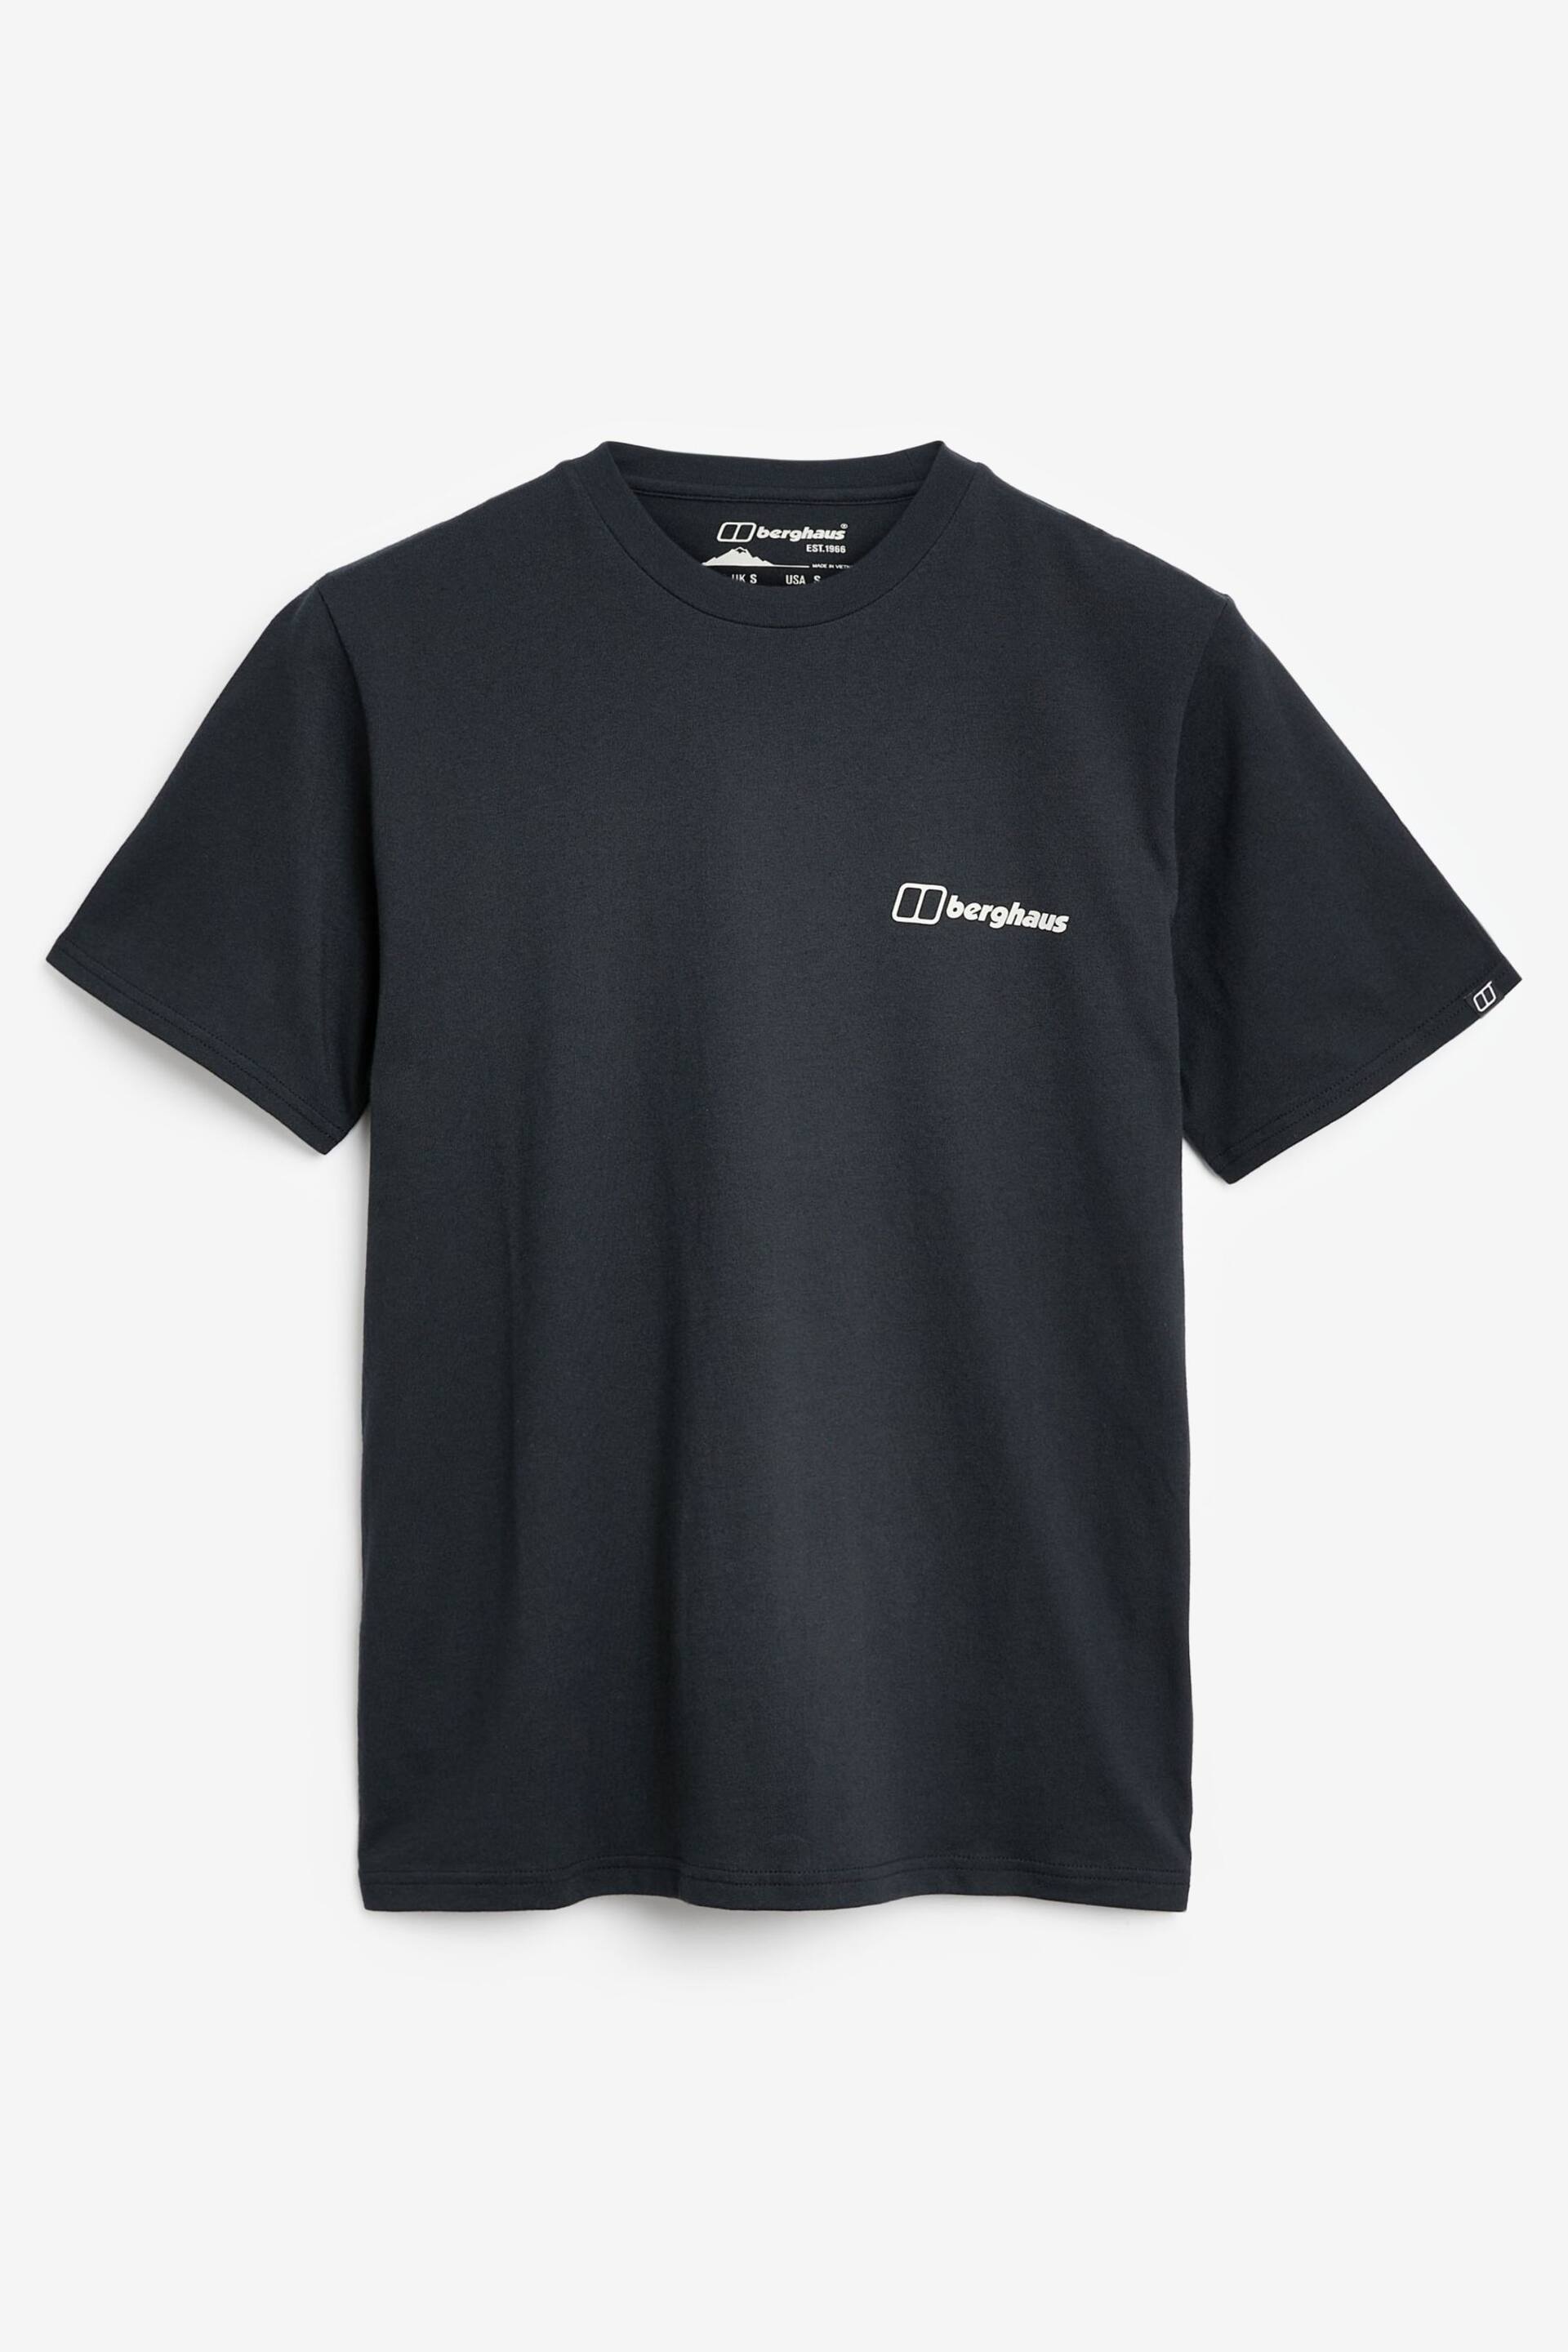 Berghaus Mountain Print T-Shirt - Image 3 of 4